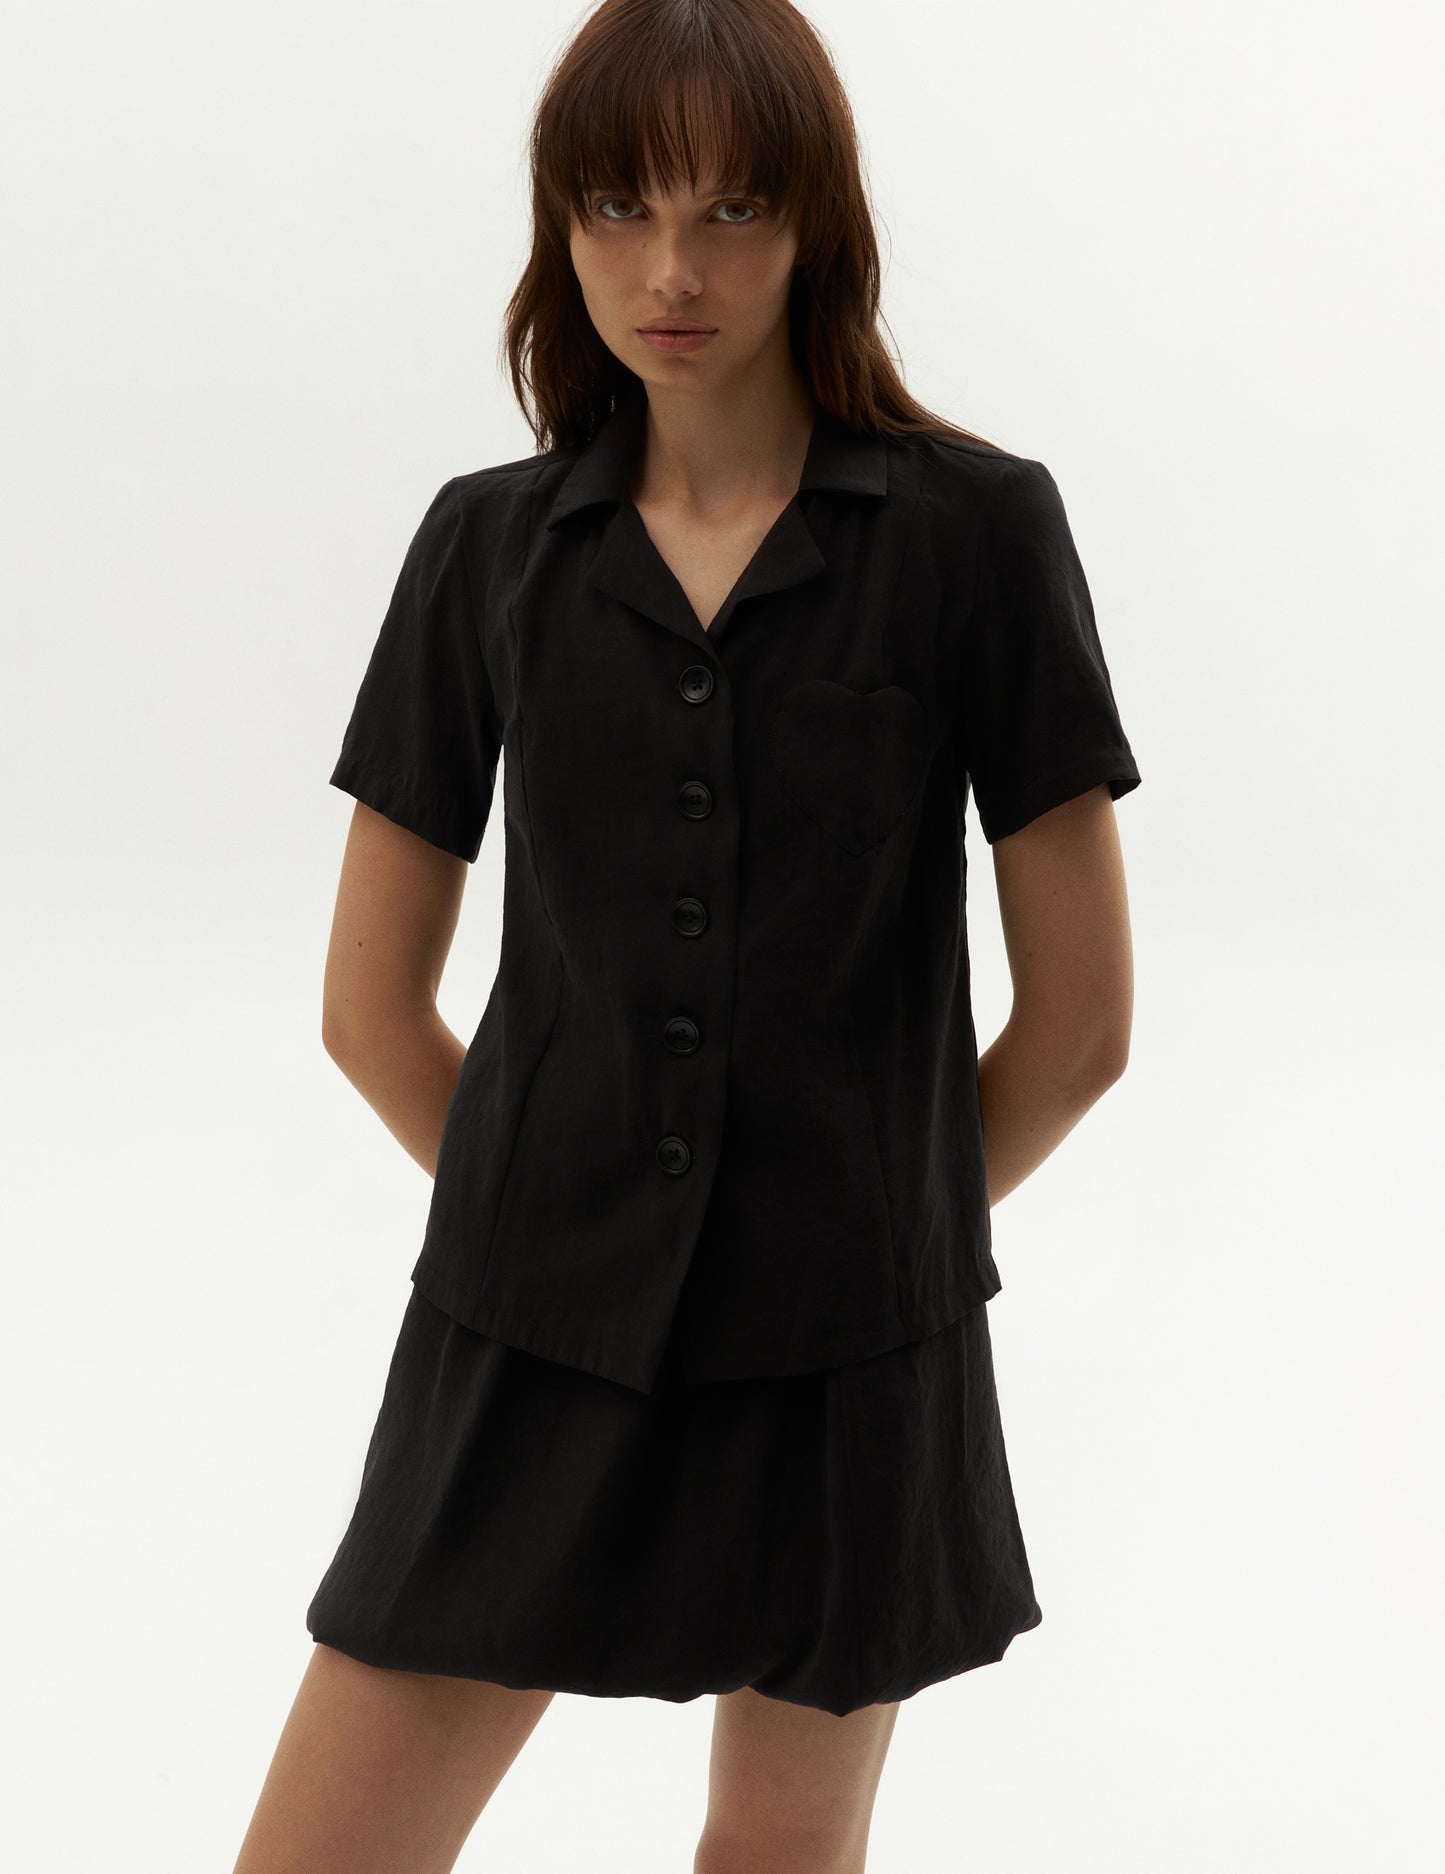 Костюм із жатої тканини спідниця та топ у чорному кольорі. Бренд форма. Black suit skirt and shirt from clothing brand FORMA